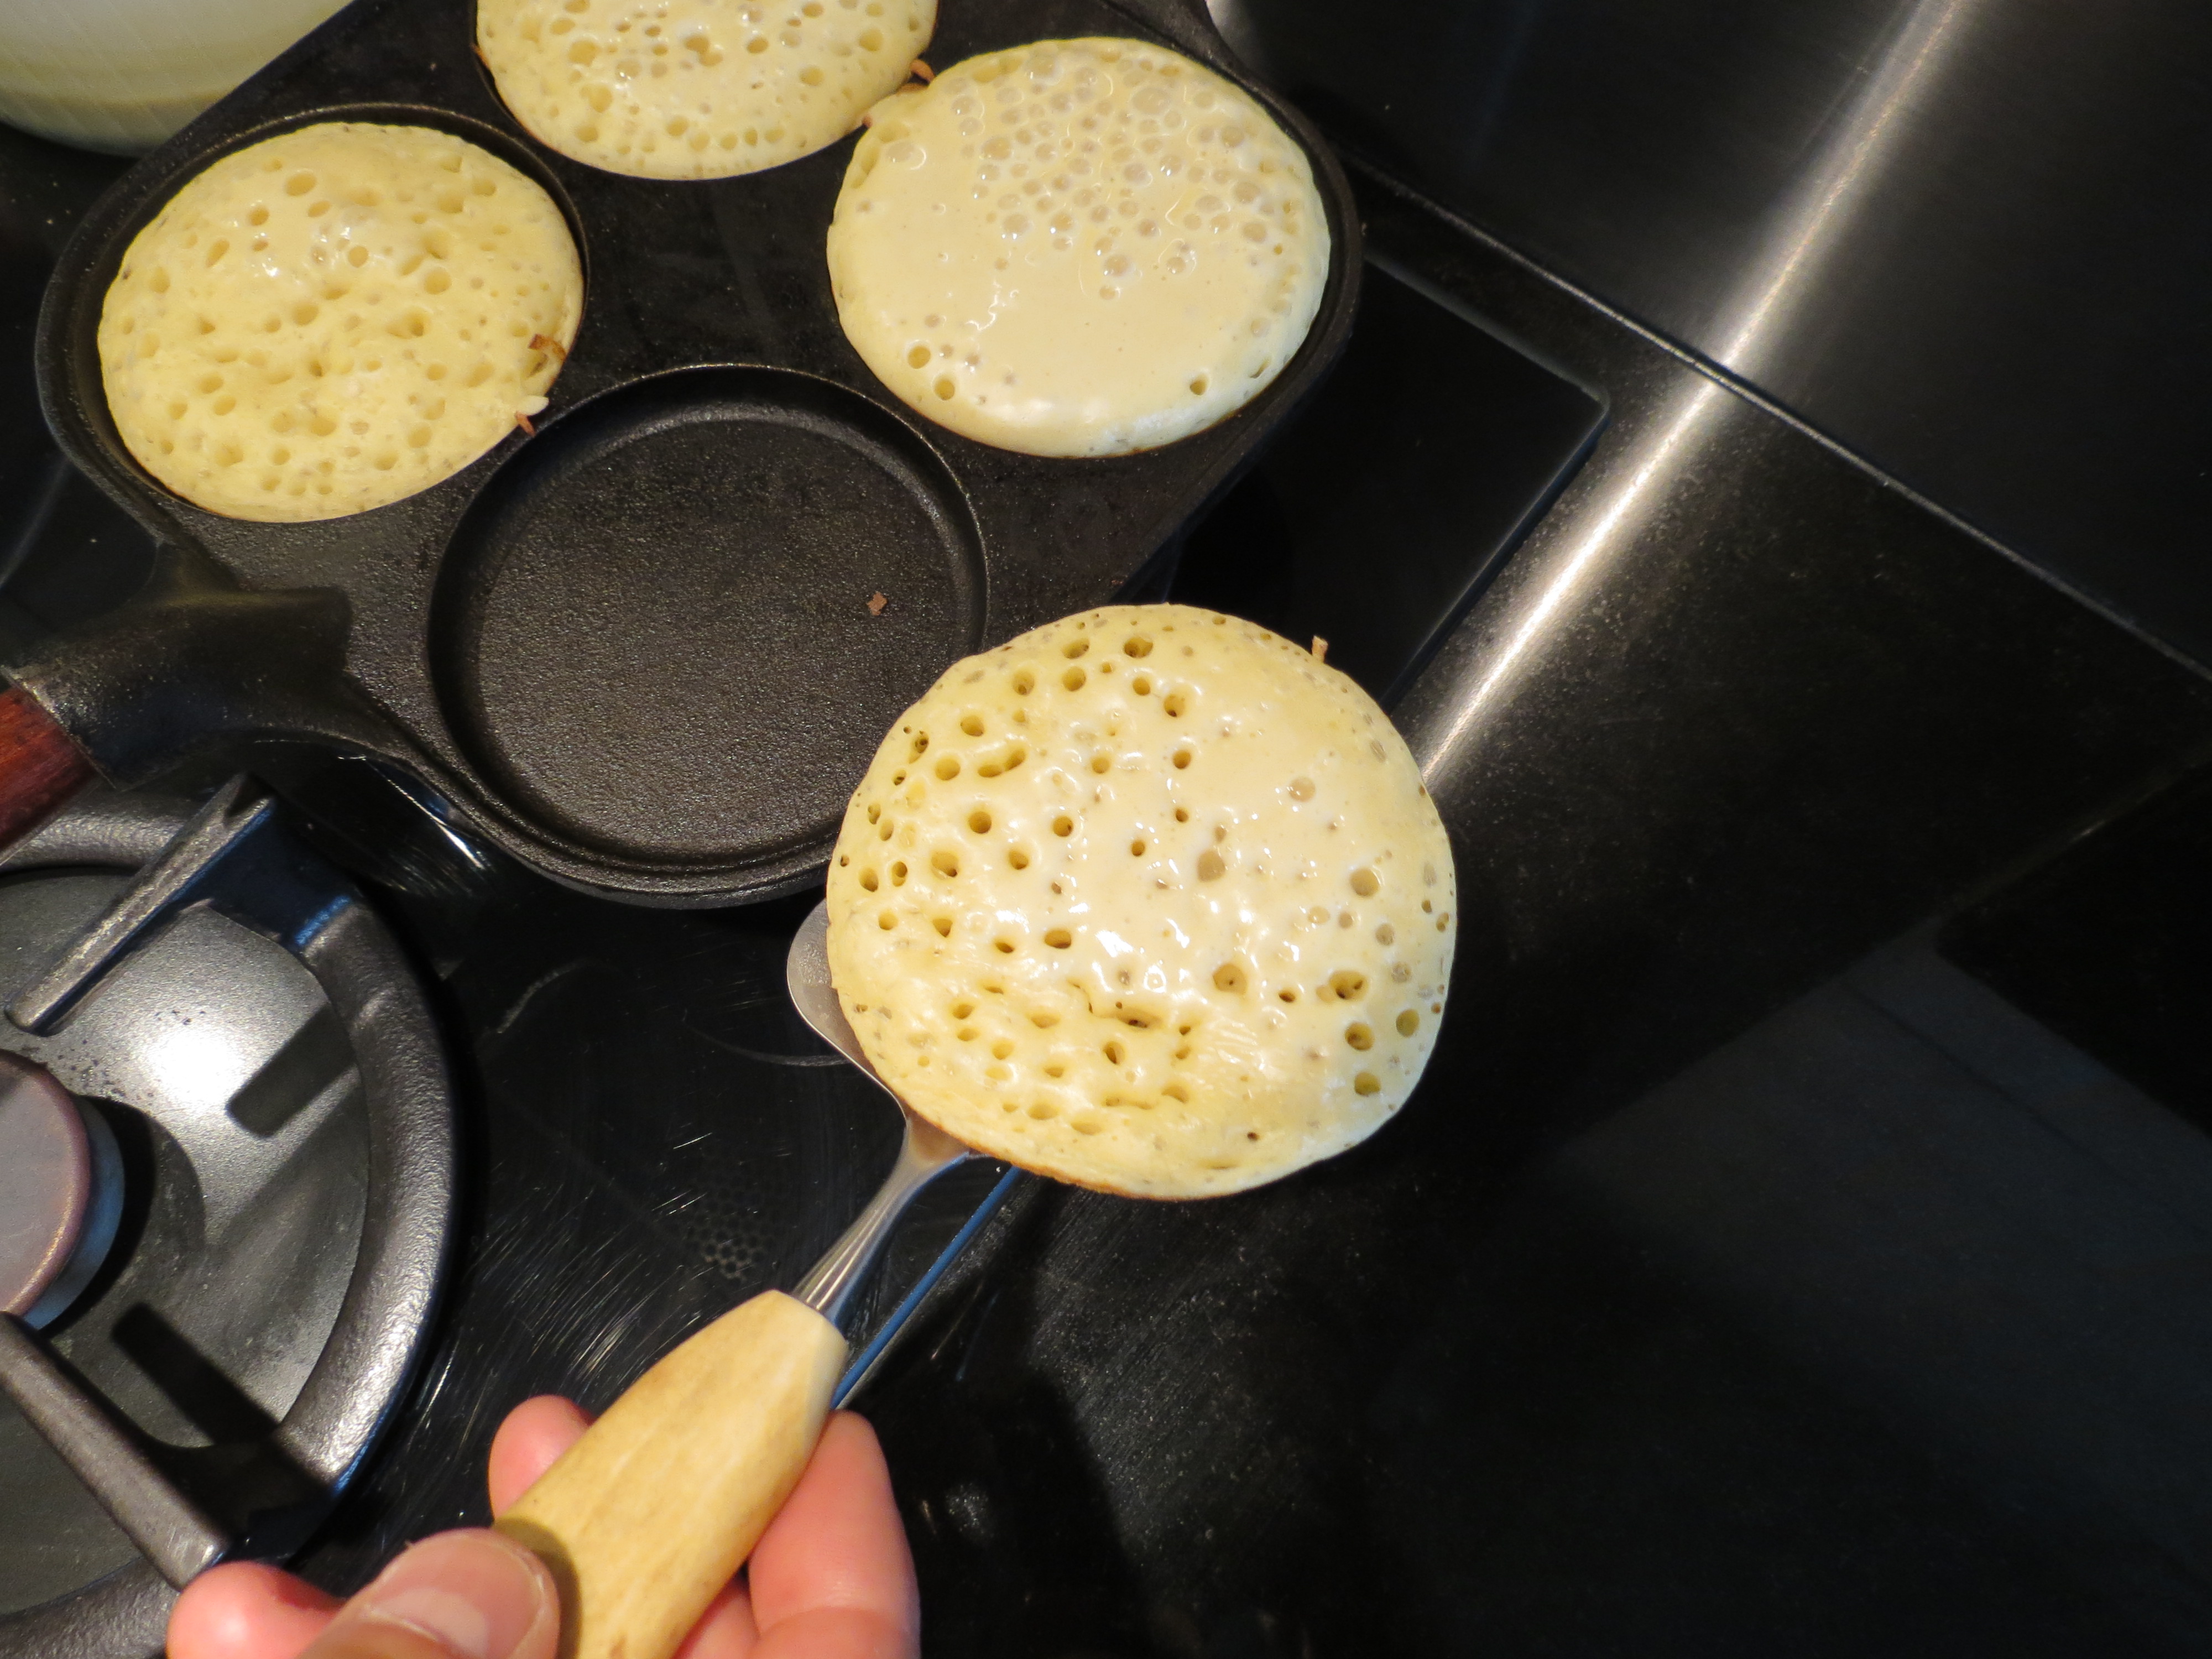 Des pancakes tous chauds !